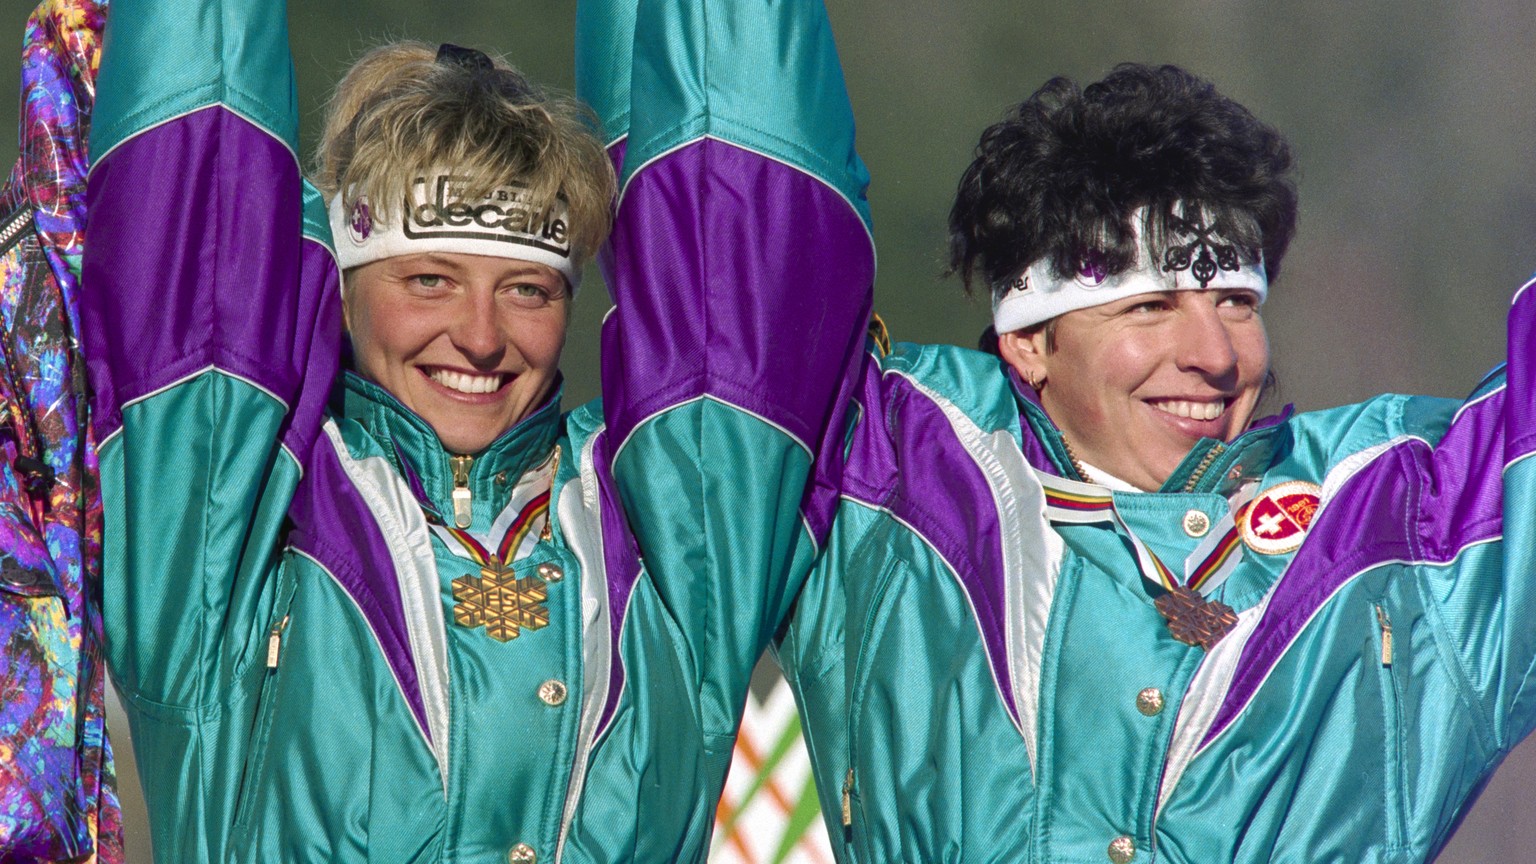 Chantal Bournissen, Mitte, gewinnt bei den Alpinen Skiweltmeisterschaften in Saalbach die Kombination vor Ingrid Stoeckl, links, und Vreni Schneider, rechts, aufgenommen am 25. Januar 1991. (KEYSTONE/ ...